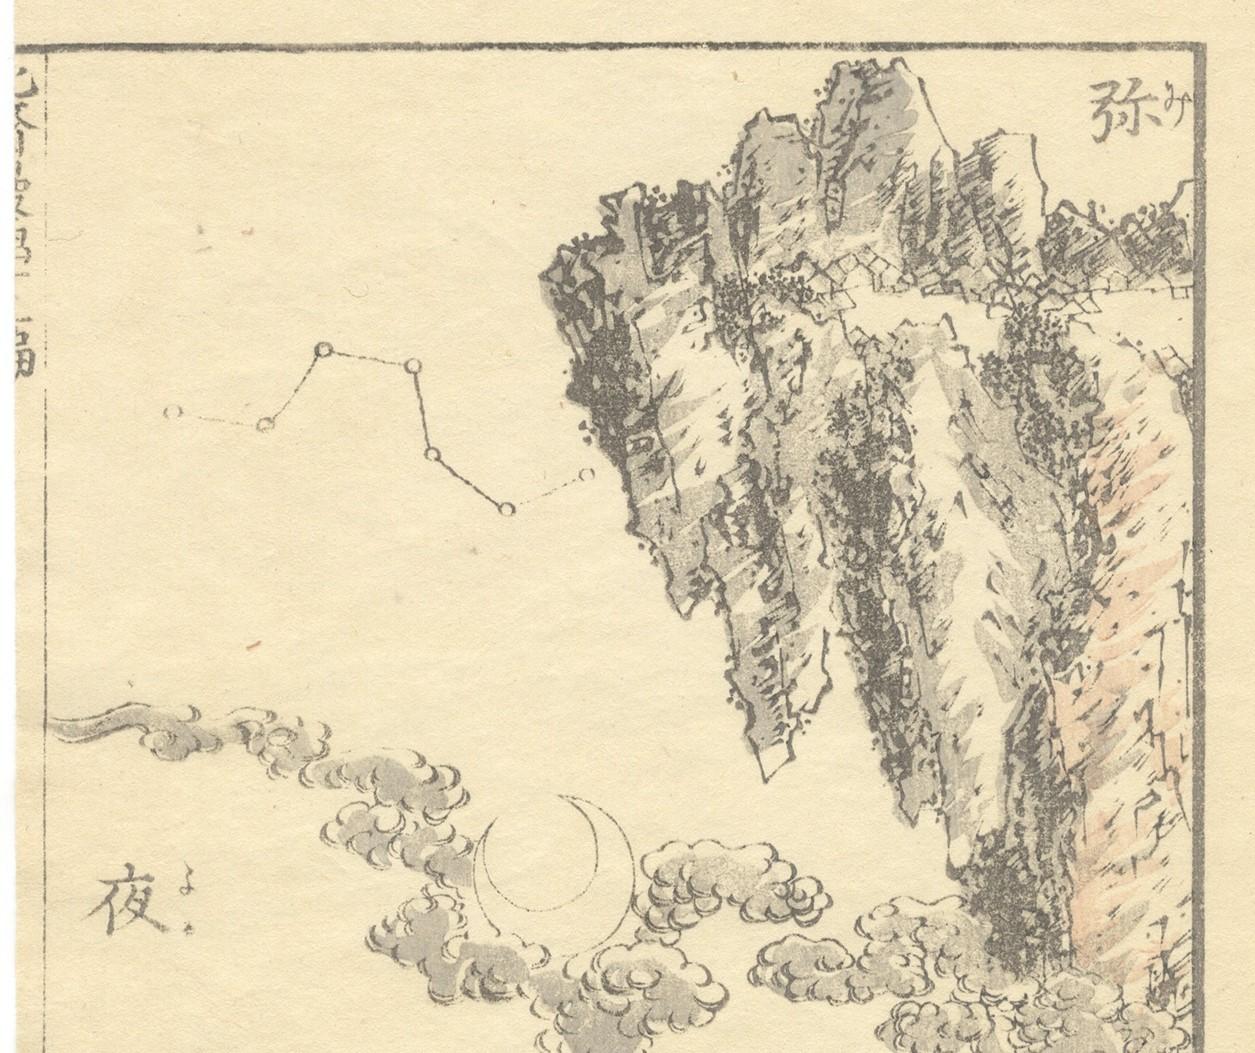 hokusai ukiyo-e